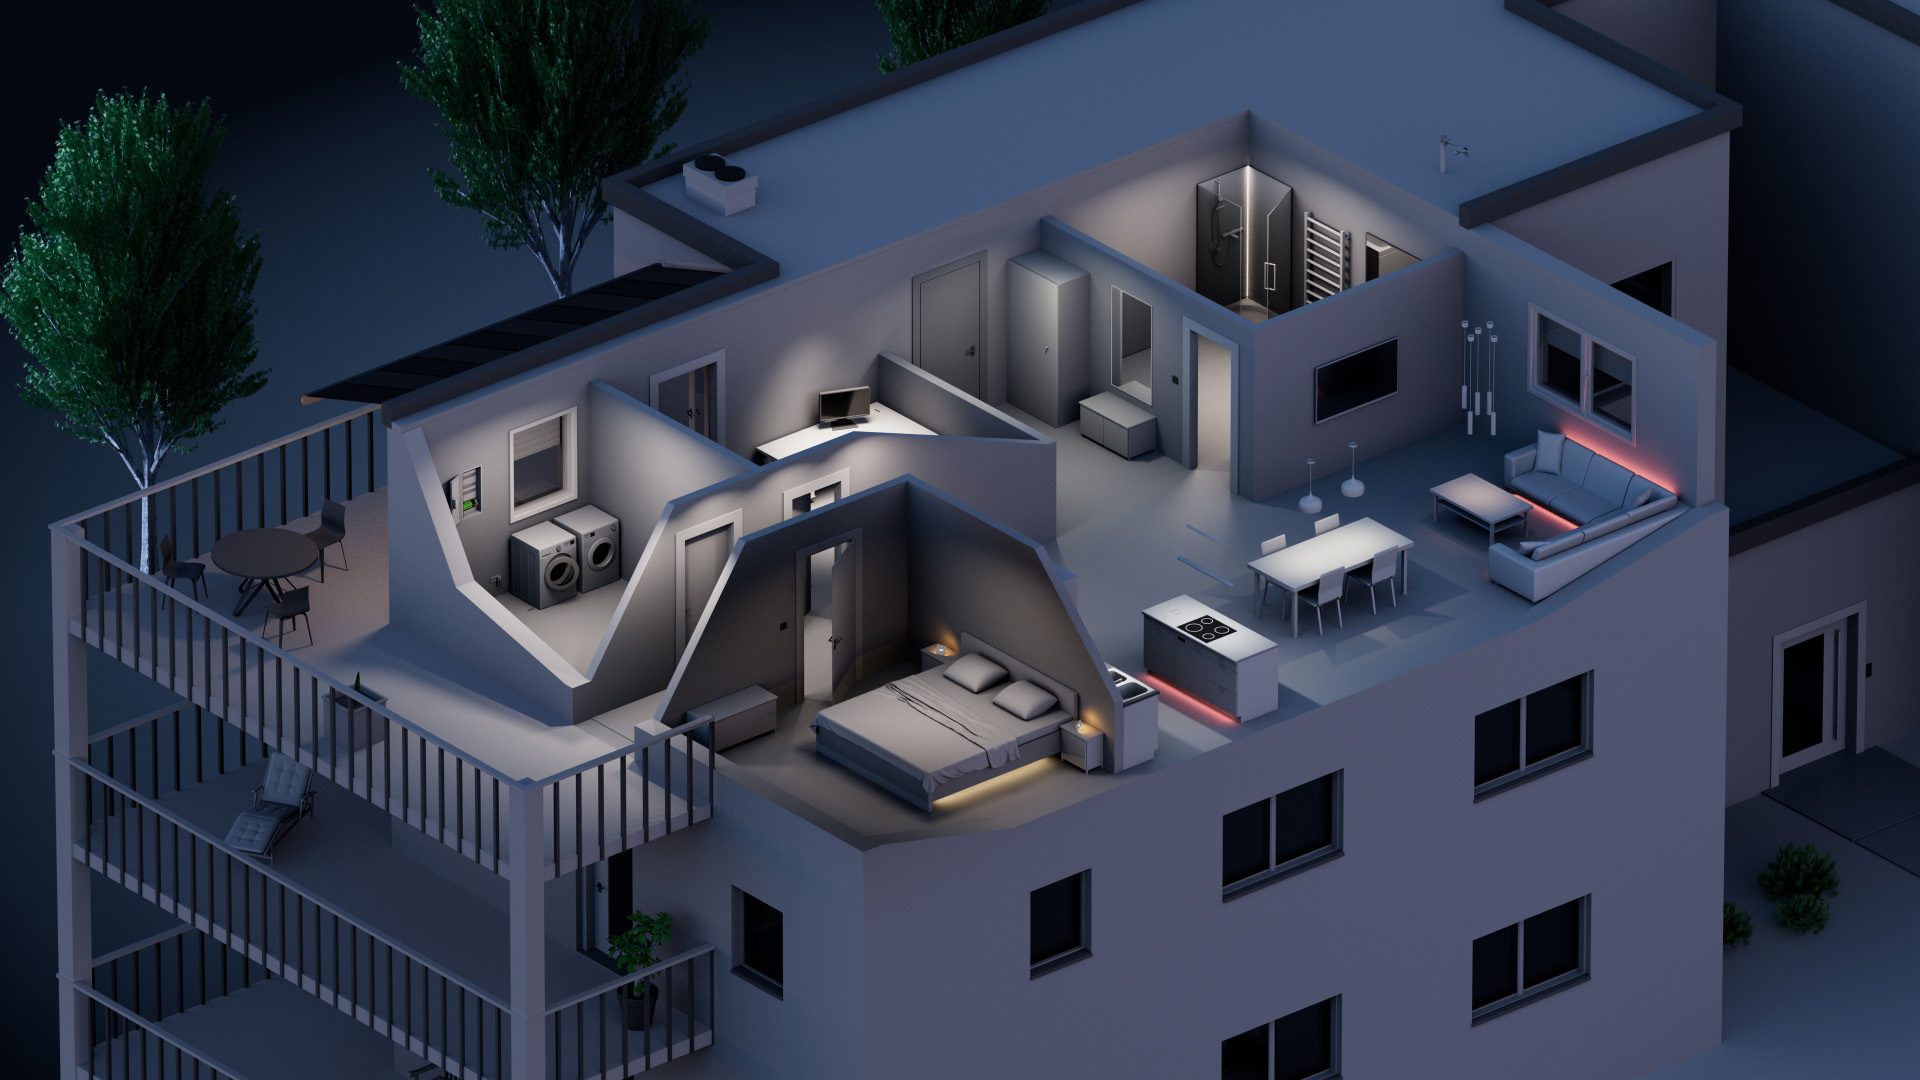 Na tomto obrázku je vidieť náhľad do bytovej jednotky. Je tu náhľad do jednotlivých izieb a ich vybavenia a osvetlenia.